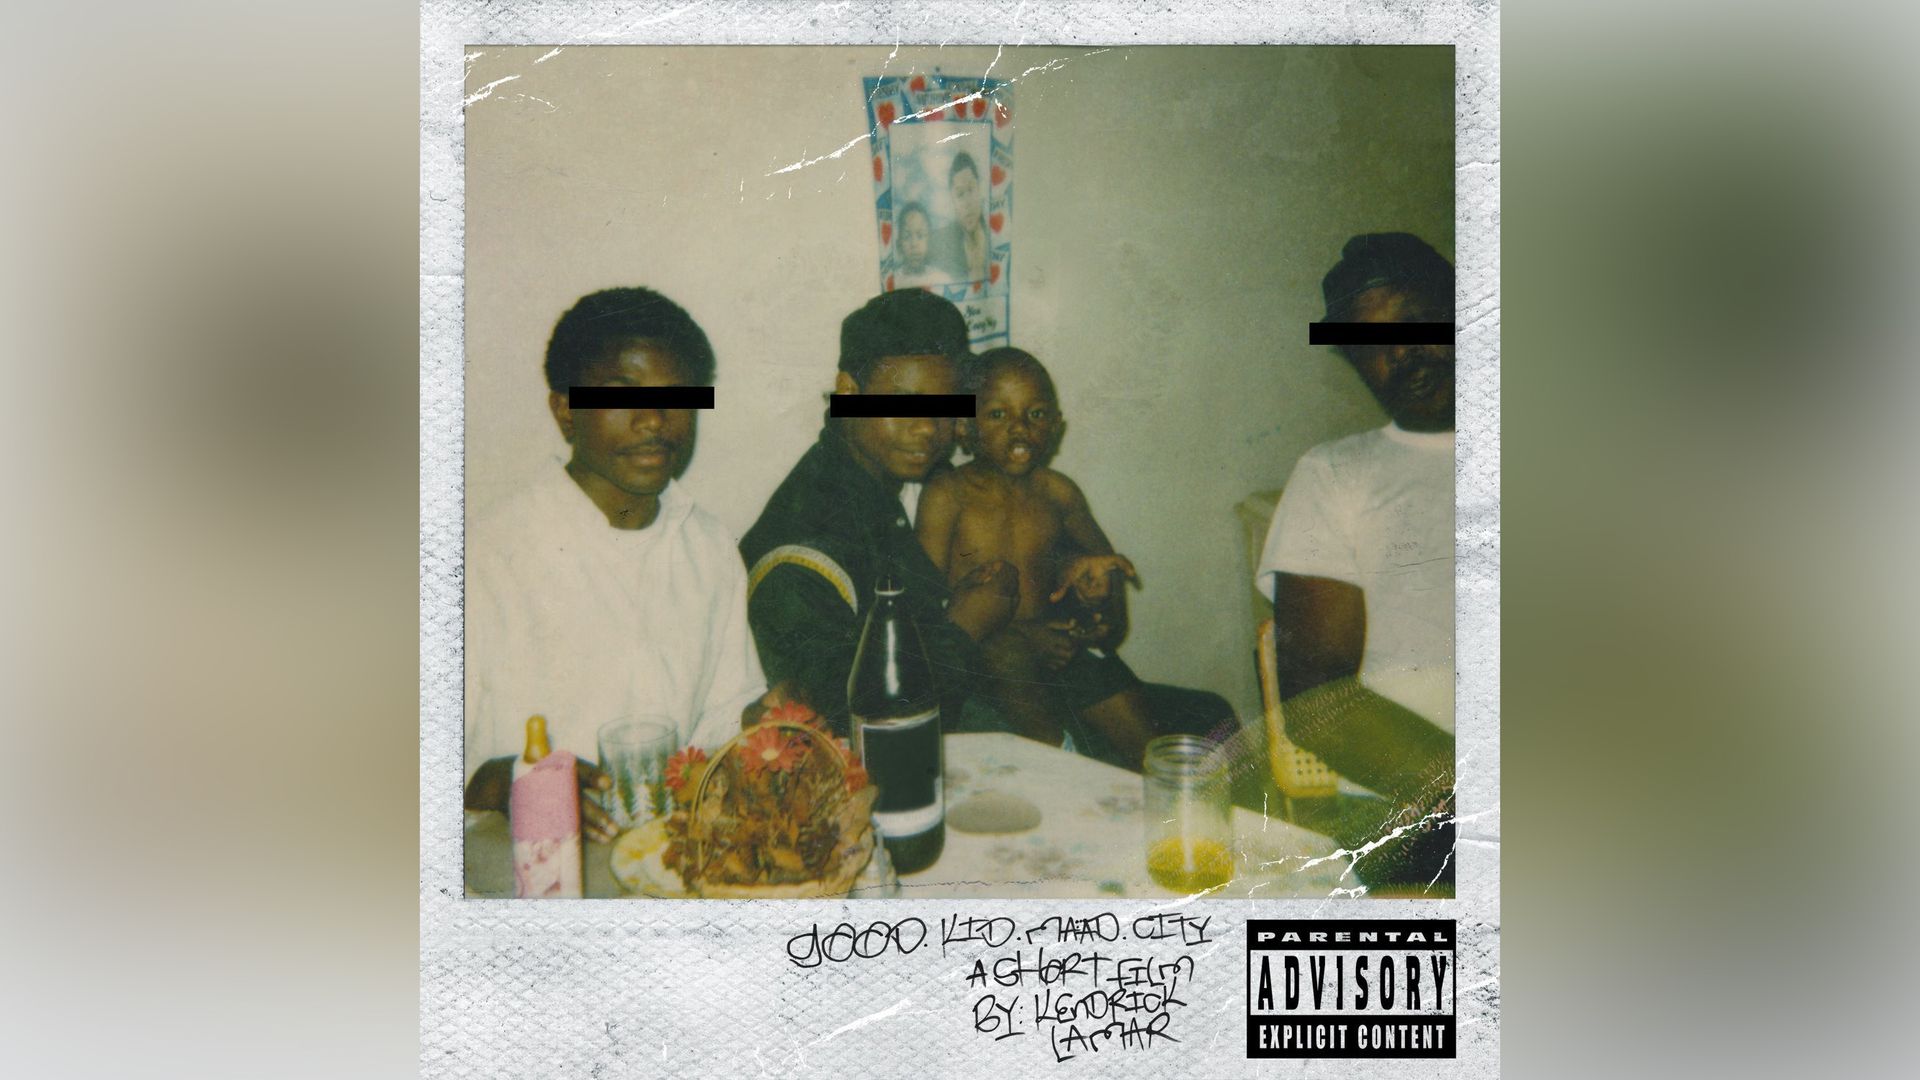 Kendrick Lamar's album cover for Good Kid, M.A.A.D City